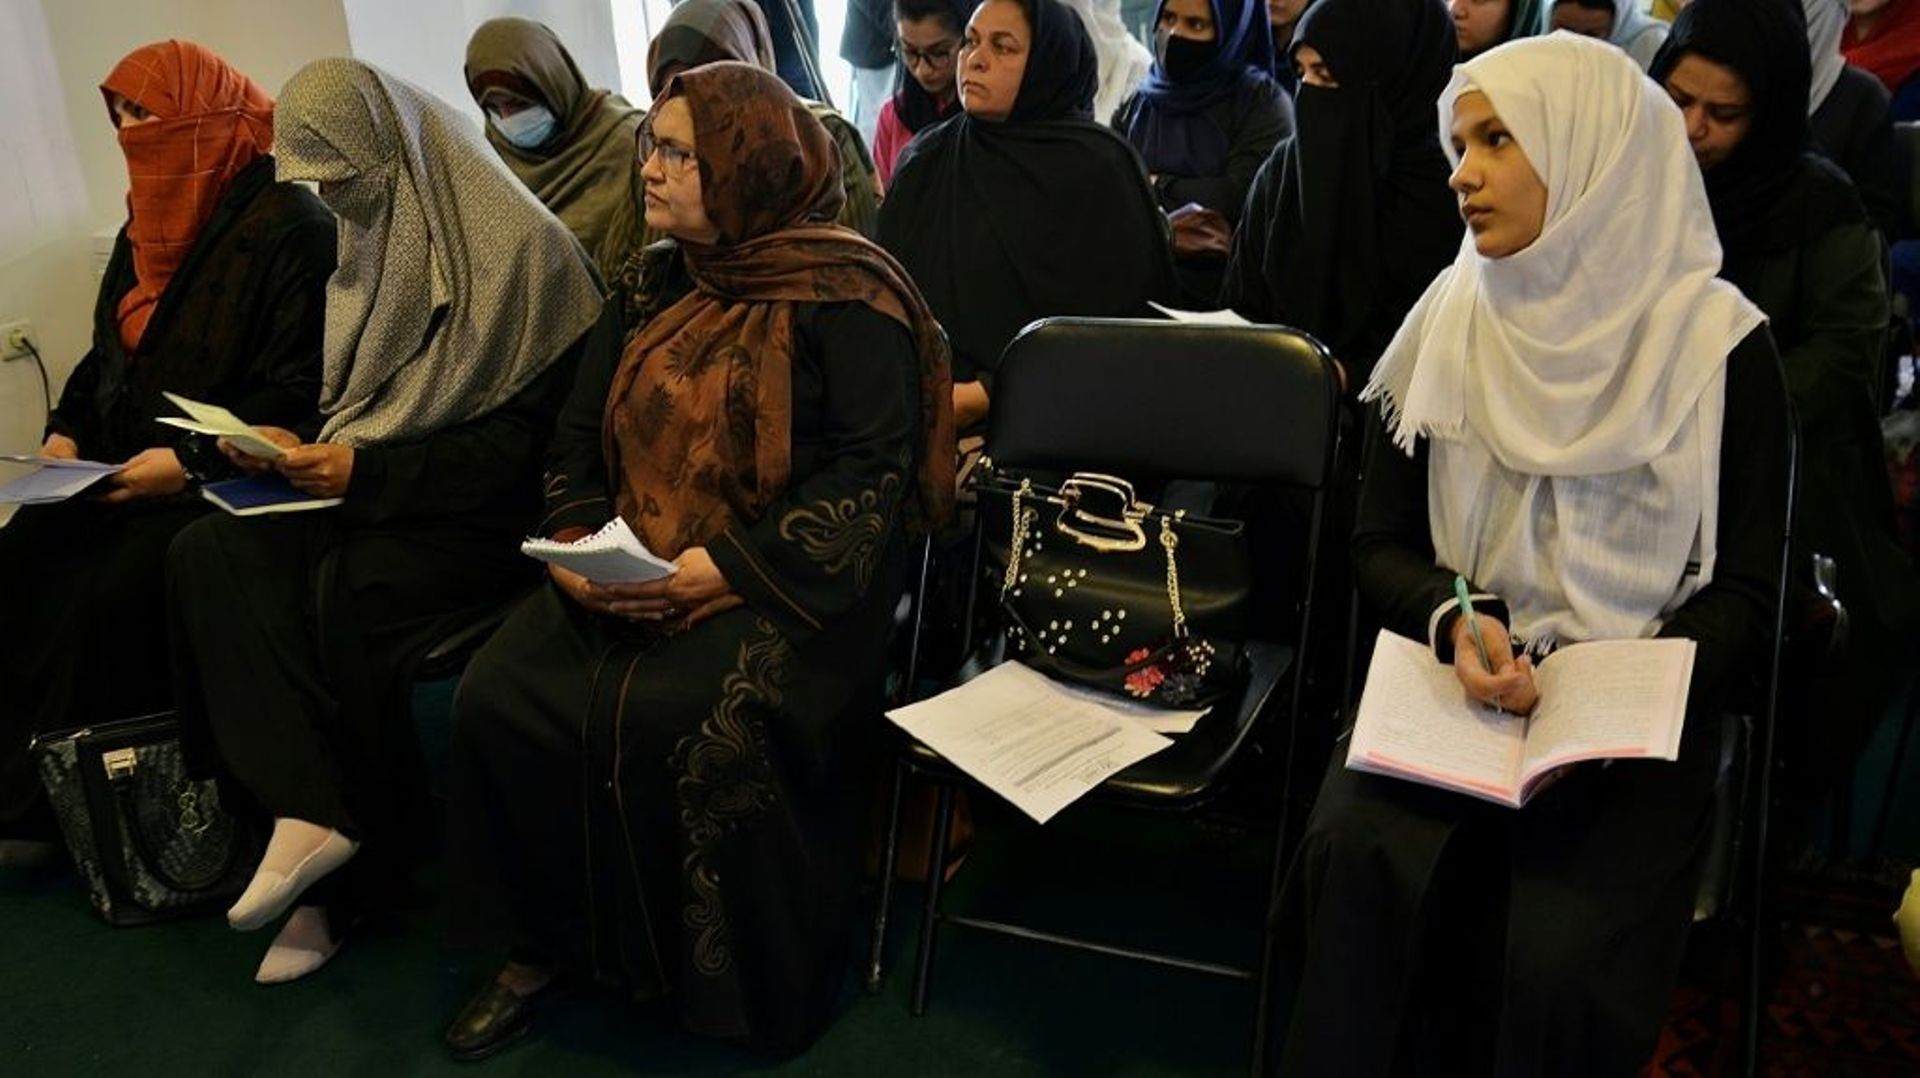 Des Afghanes, membres d'associations de défense des droits des femmes en Afghanistan, lors d'une conférence de presse pour demander la réouverture des écoles secondaires pour les filles, le 27 mars 2022 à Kaboul